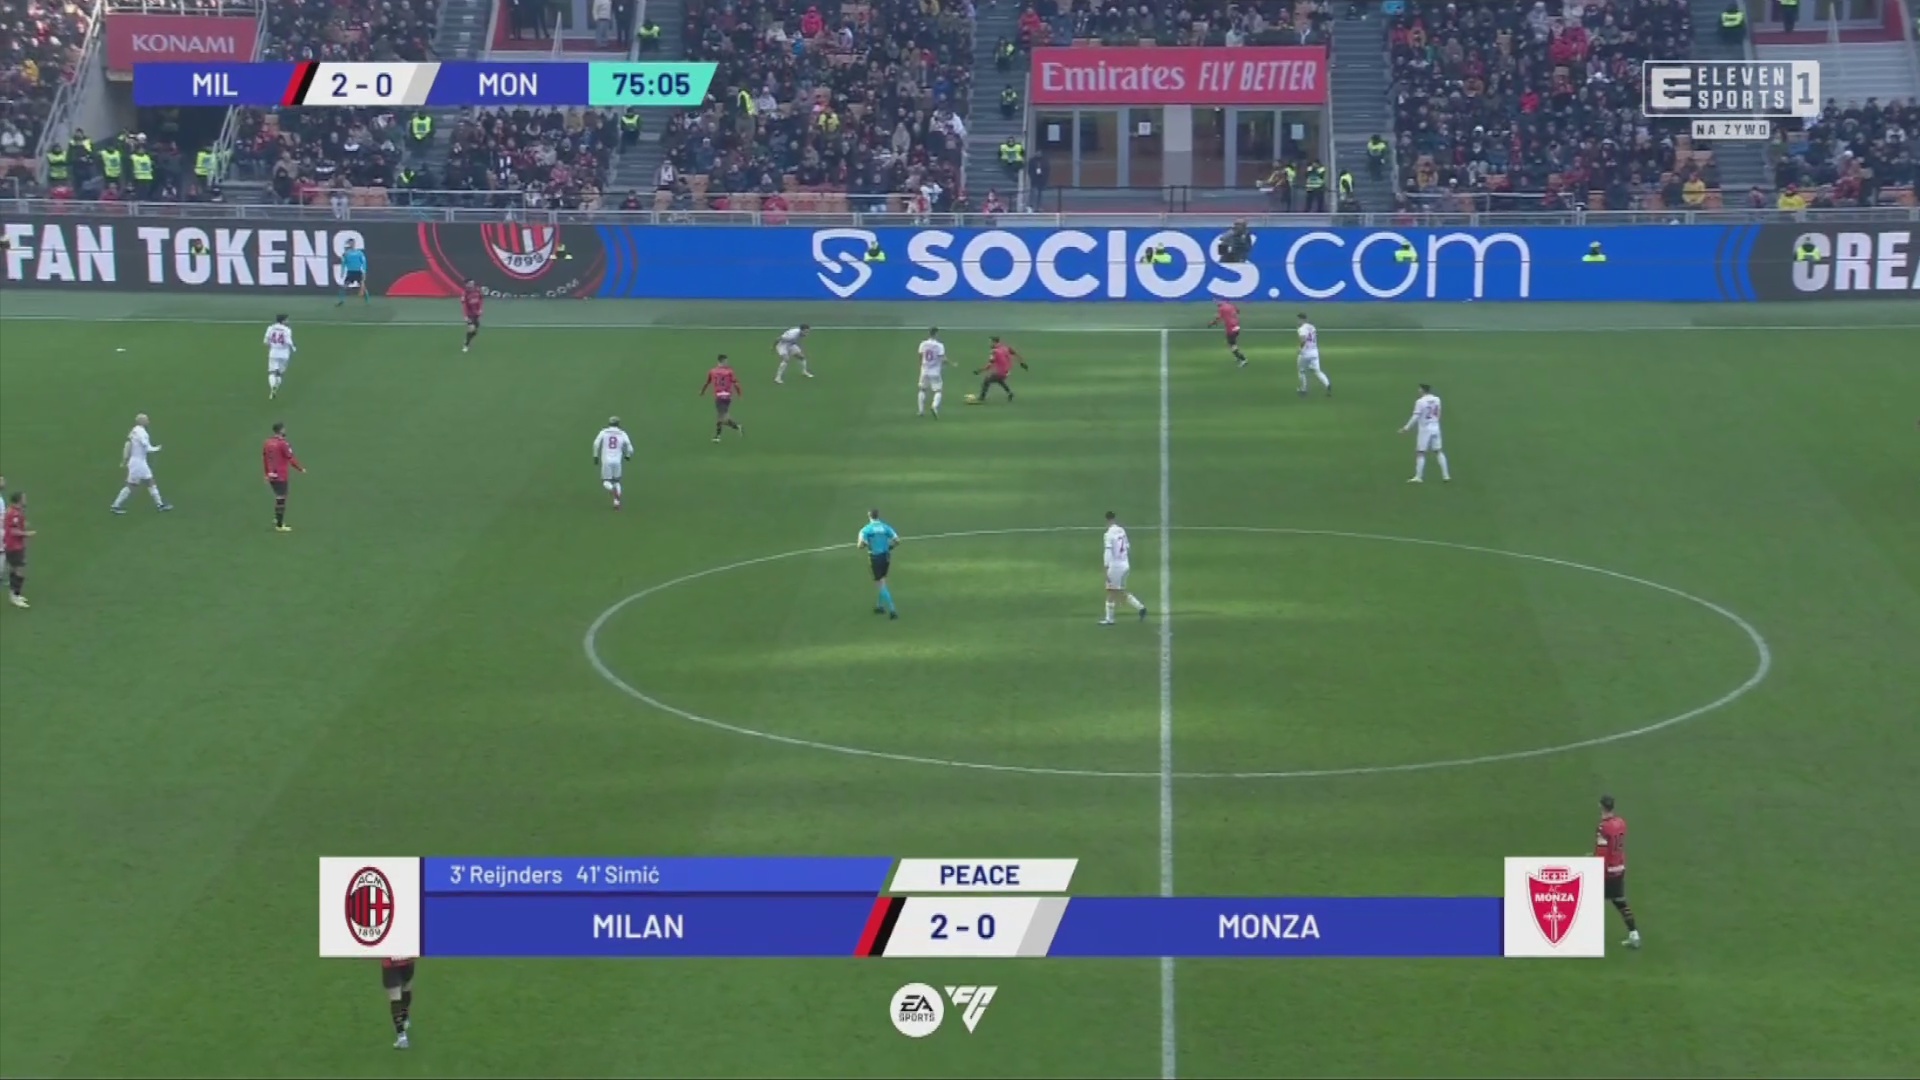 AC Milan [3] - 0 Monza - Noah Okafor 76'